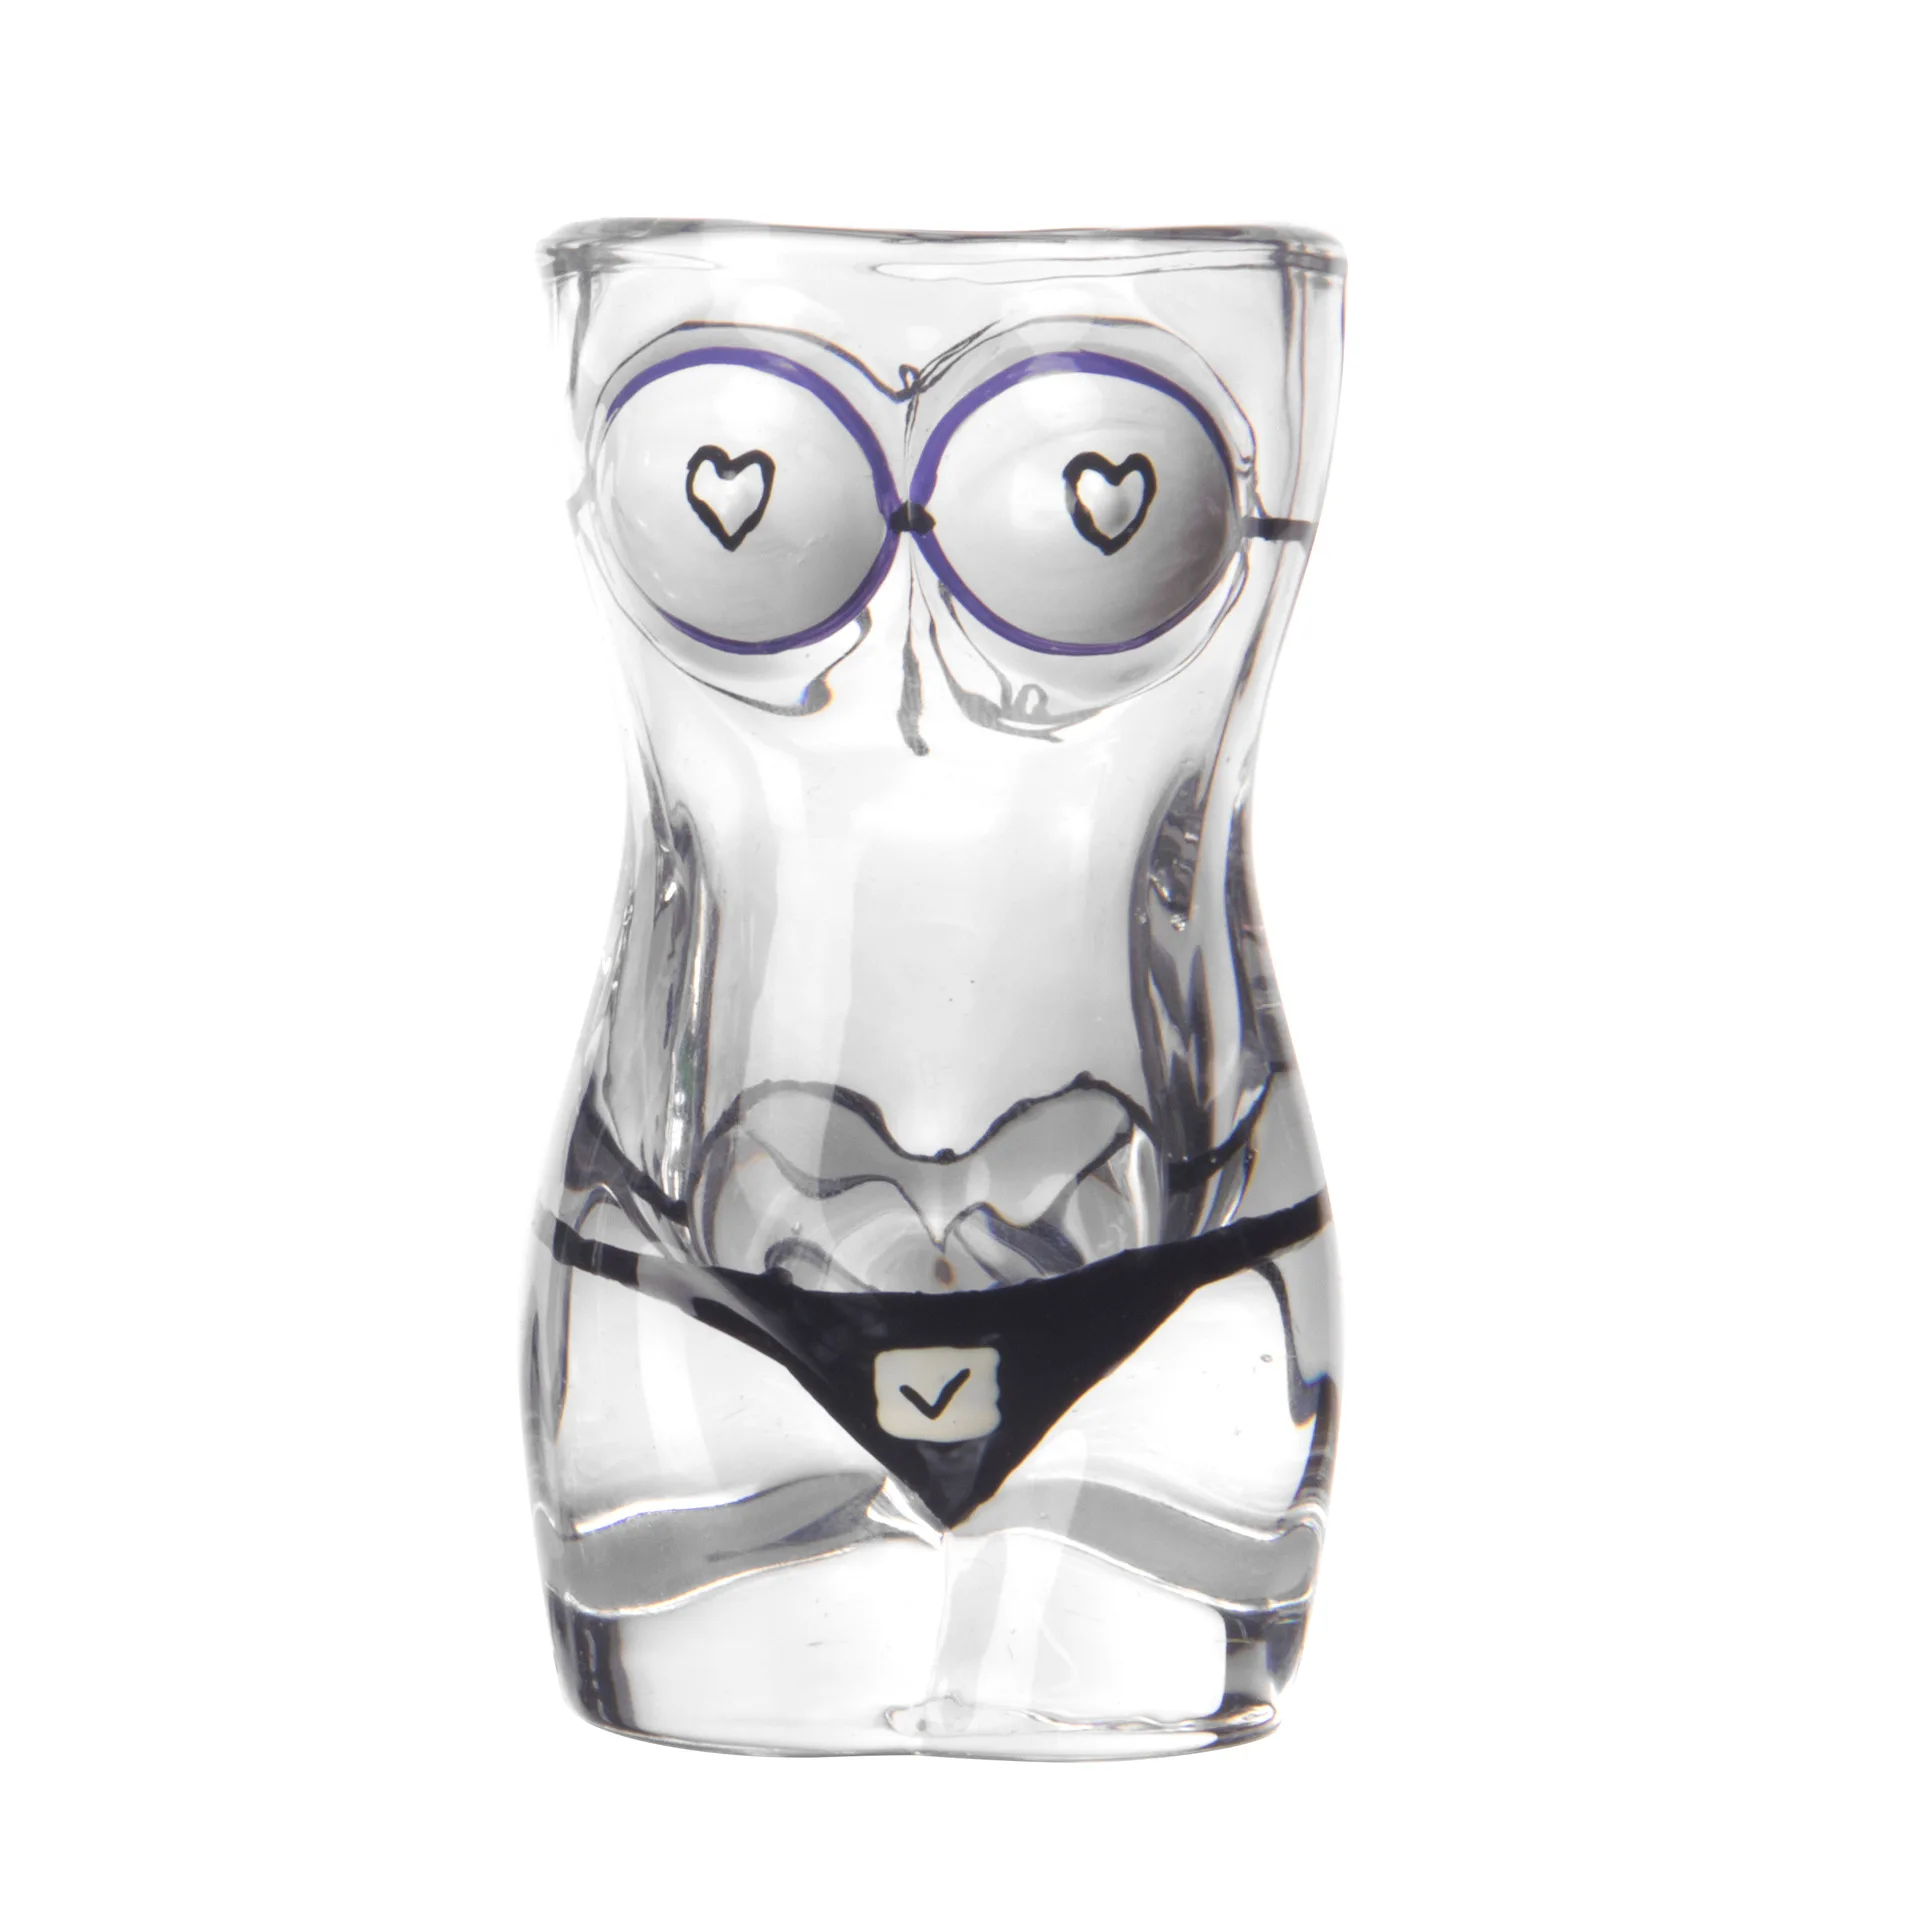 https://ae01.alicdn.com/kf/S8631a7ad20b74a90b39a57025d482b76P/Copa-de-cristal-de-cerveza-Sexy-para-hombre-y-mujer-vaso-de-cuerpo-humano-Whisky-Vodka.jpg